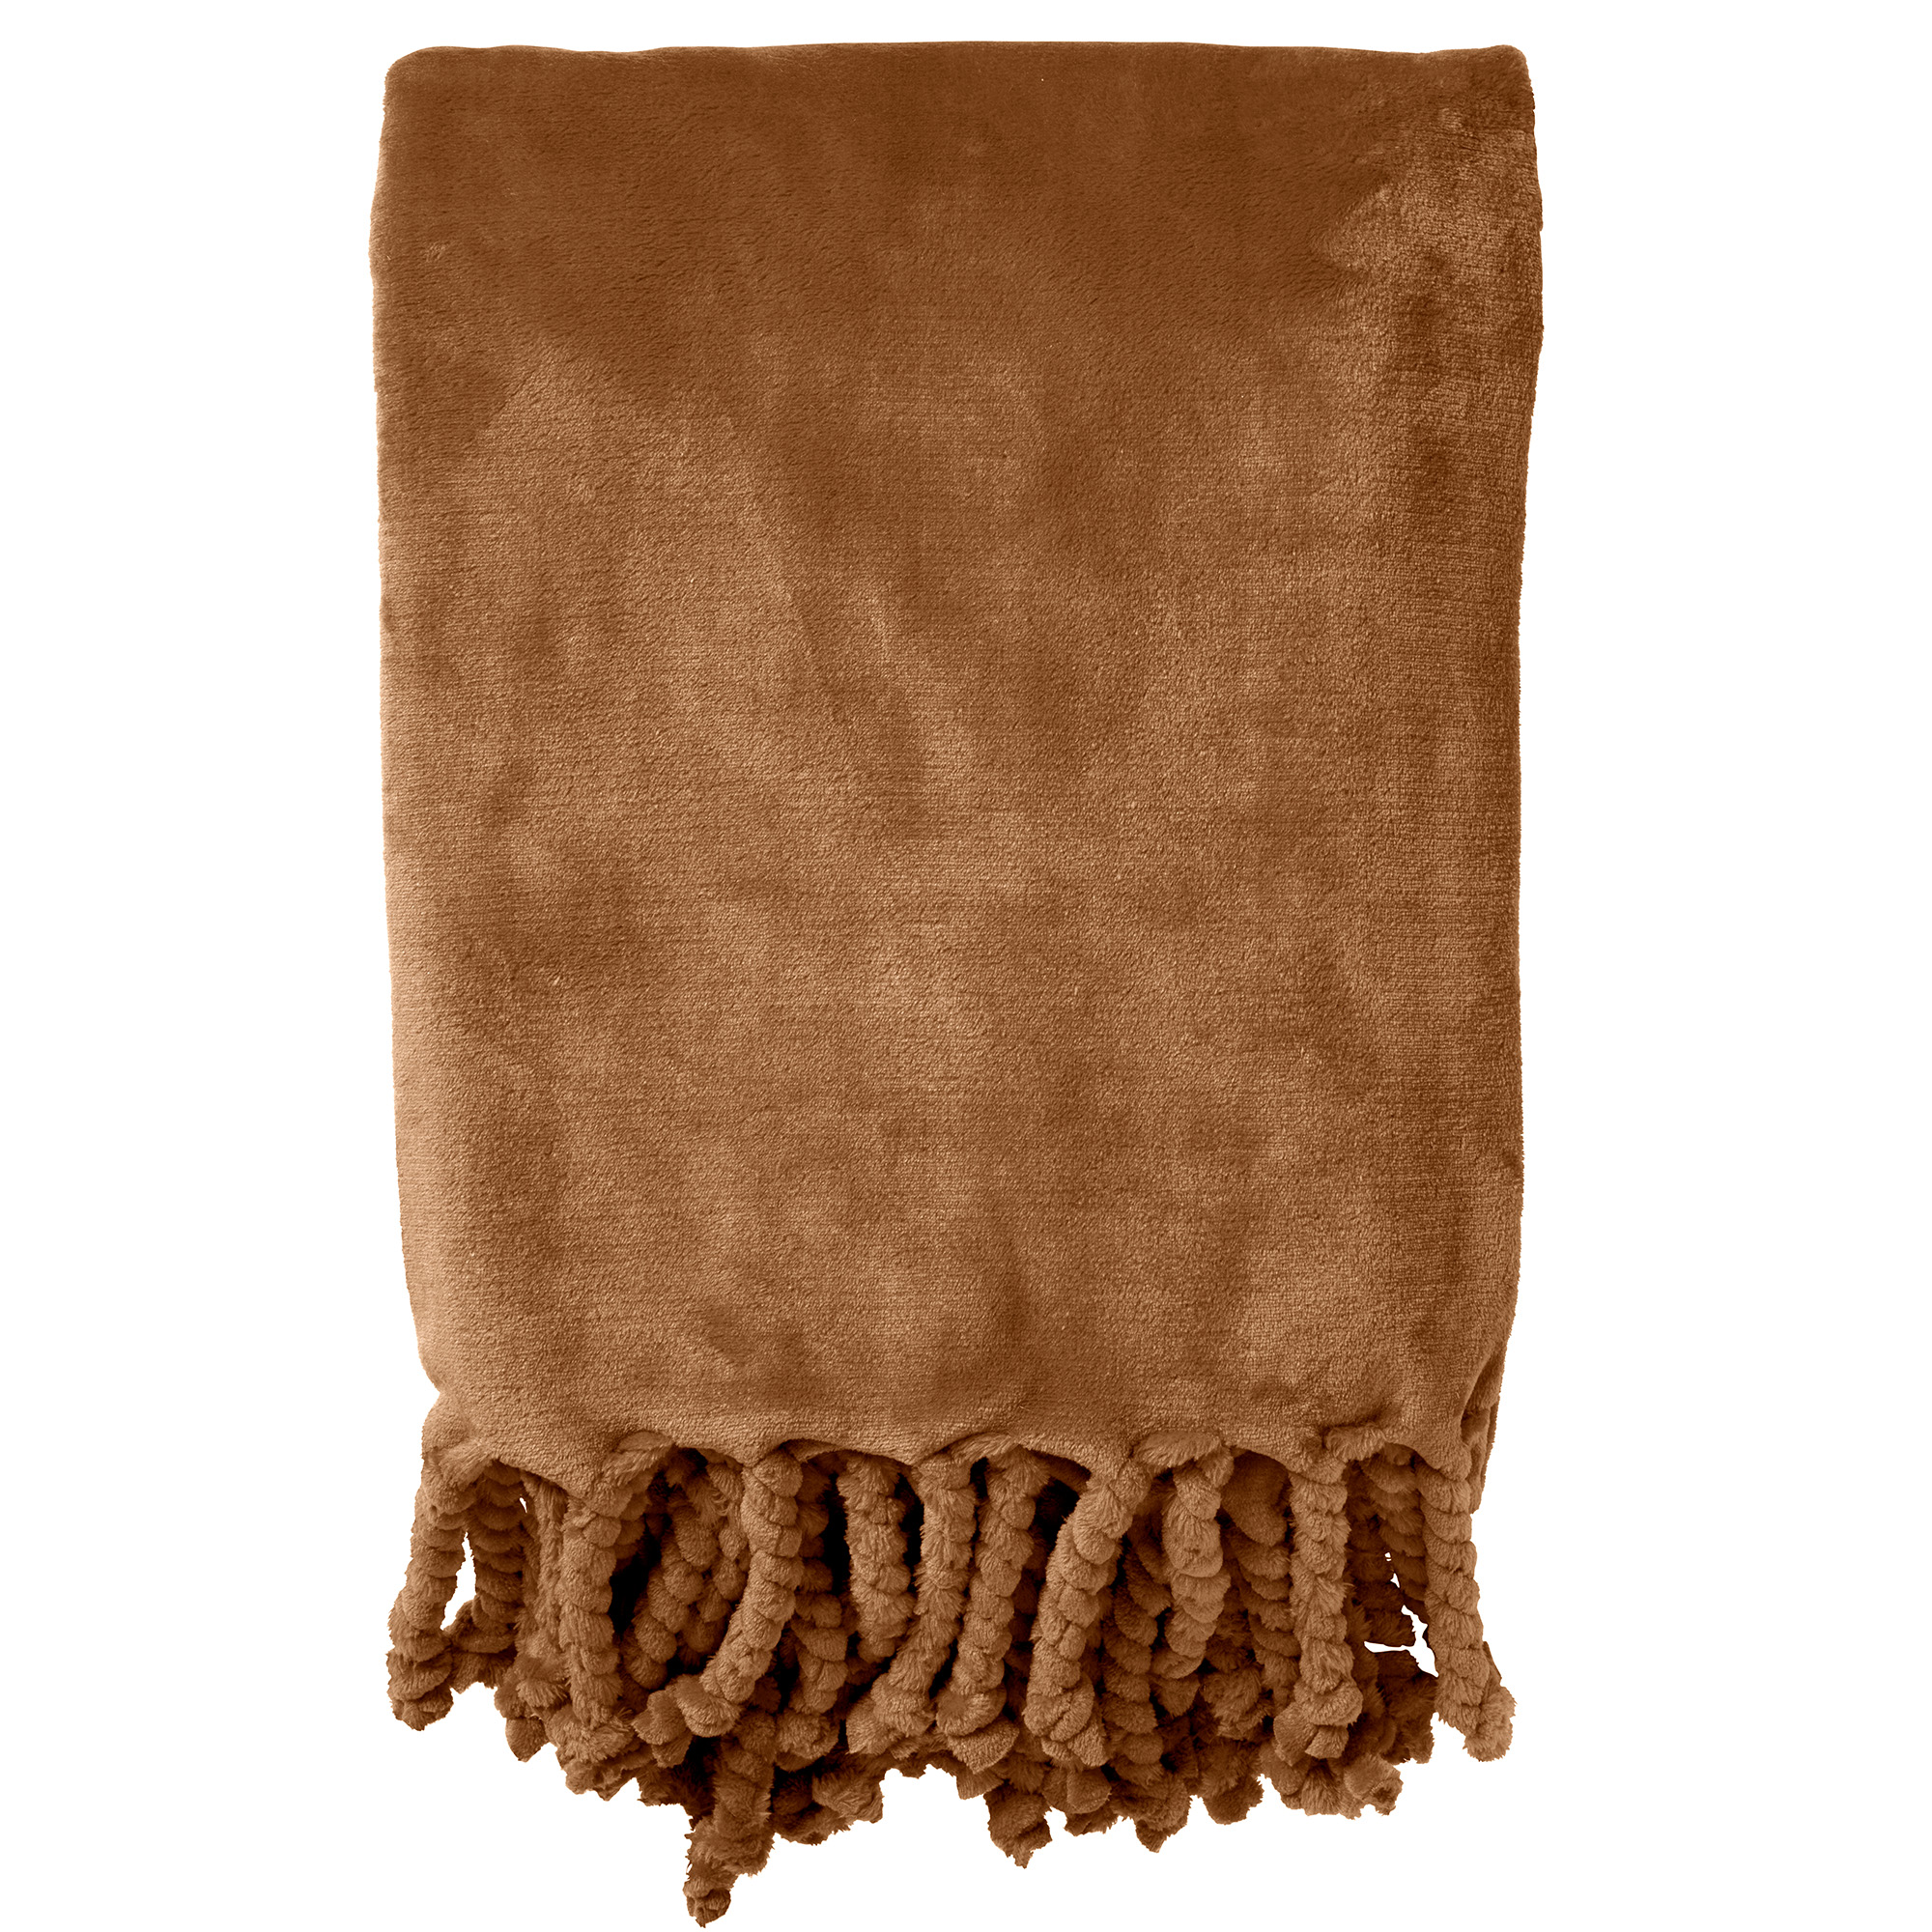 FLORIJN - Plaid 150x200 cm - grote fleece plaid met flosjes - Tobacco Brown - bruin